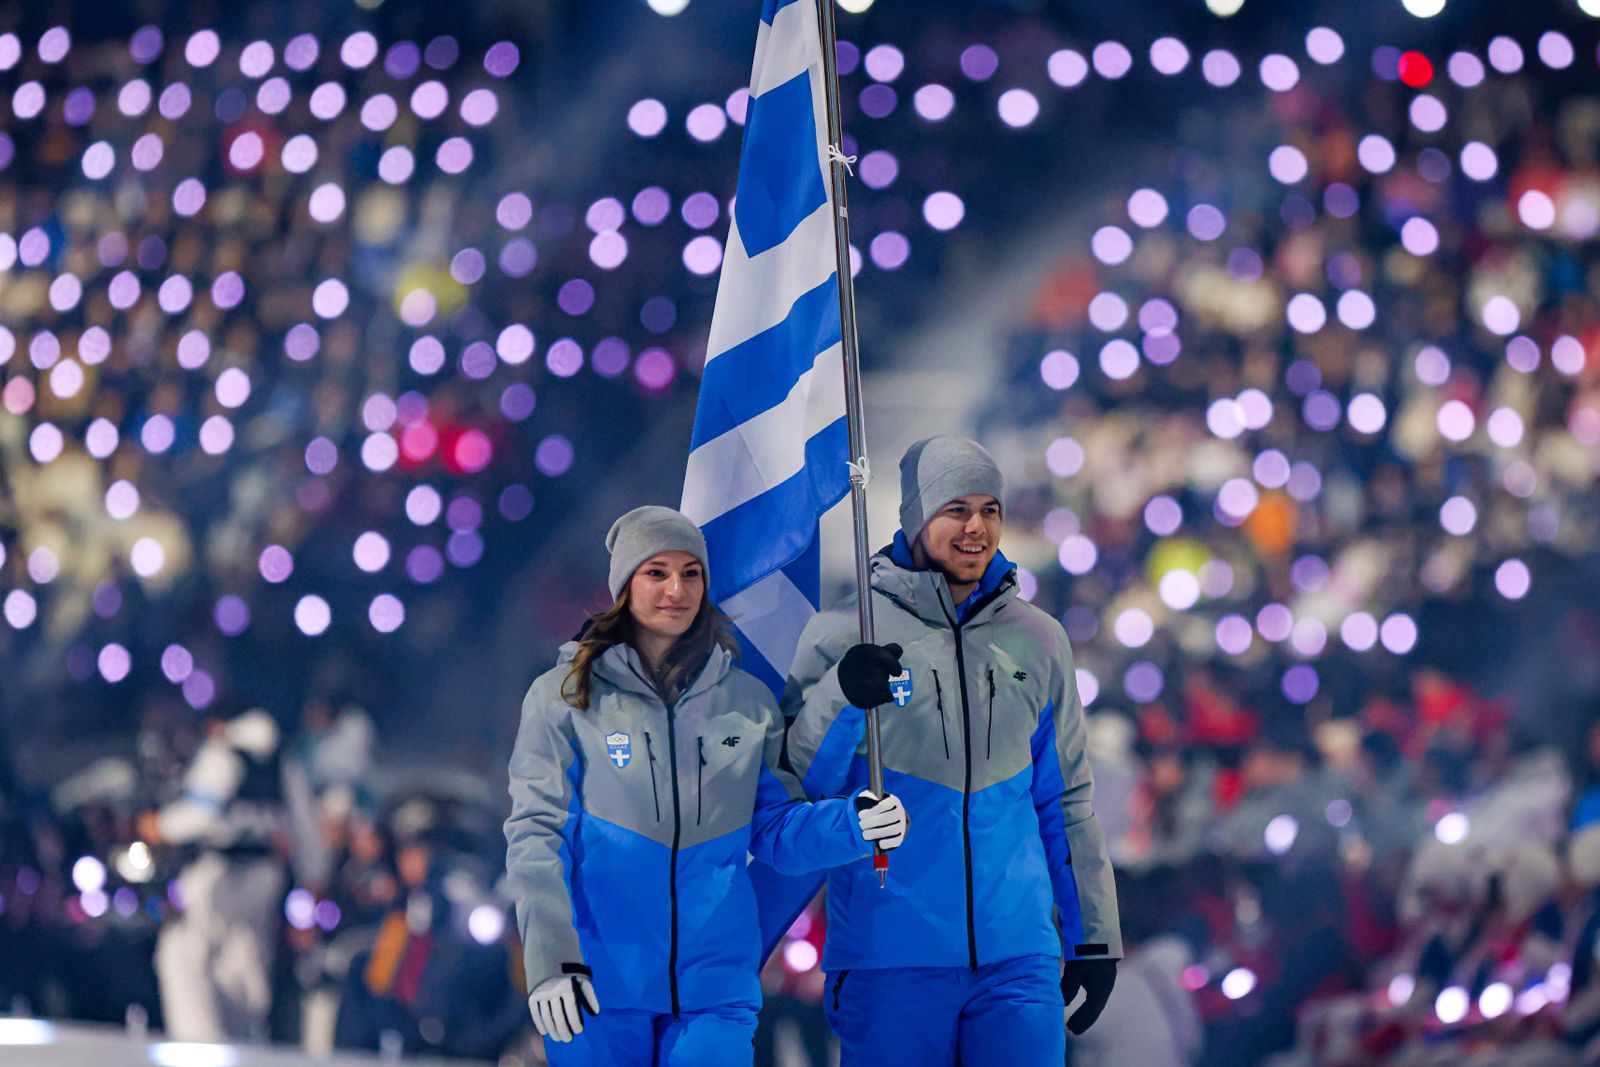 Με την Ελλάδα πρώτη στην Τελετή Έναρξης άρχισαν οι Χειμερινοί Ολυμπιακοί Νέων